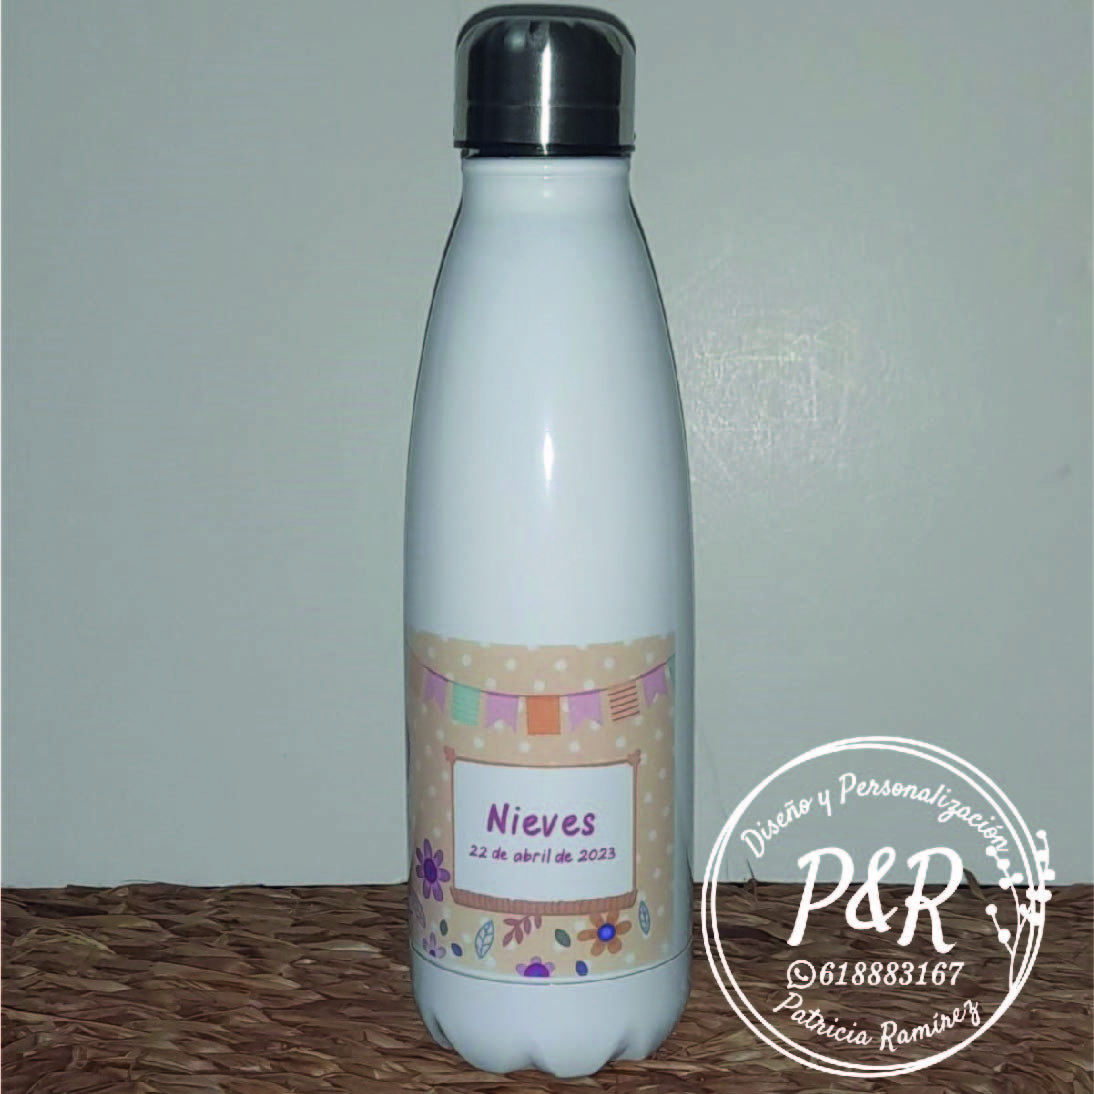 eventosyregalospersonalizados botella mod. nina comunion 1 lateral 01